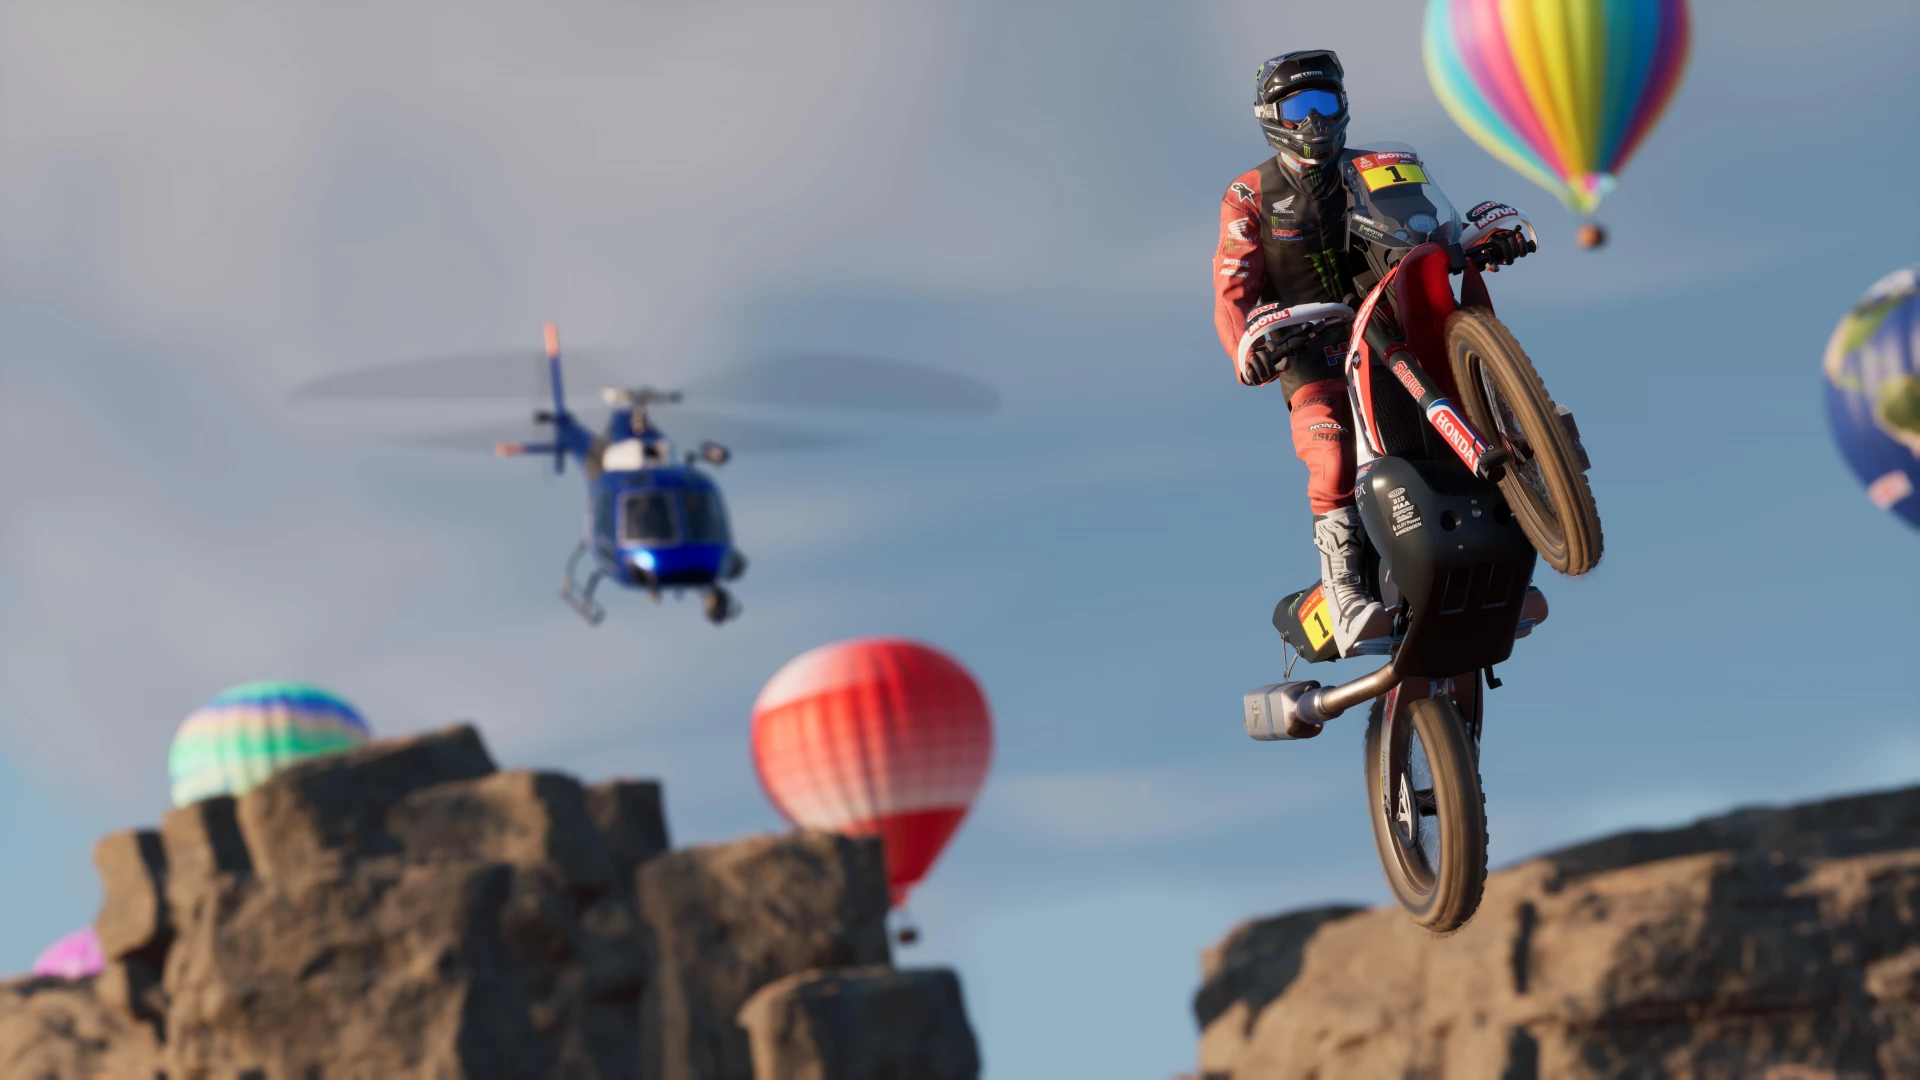 Dakar Desert Rally voor de PlayStation 5 kopen op nedgame.nl